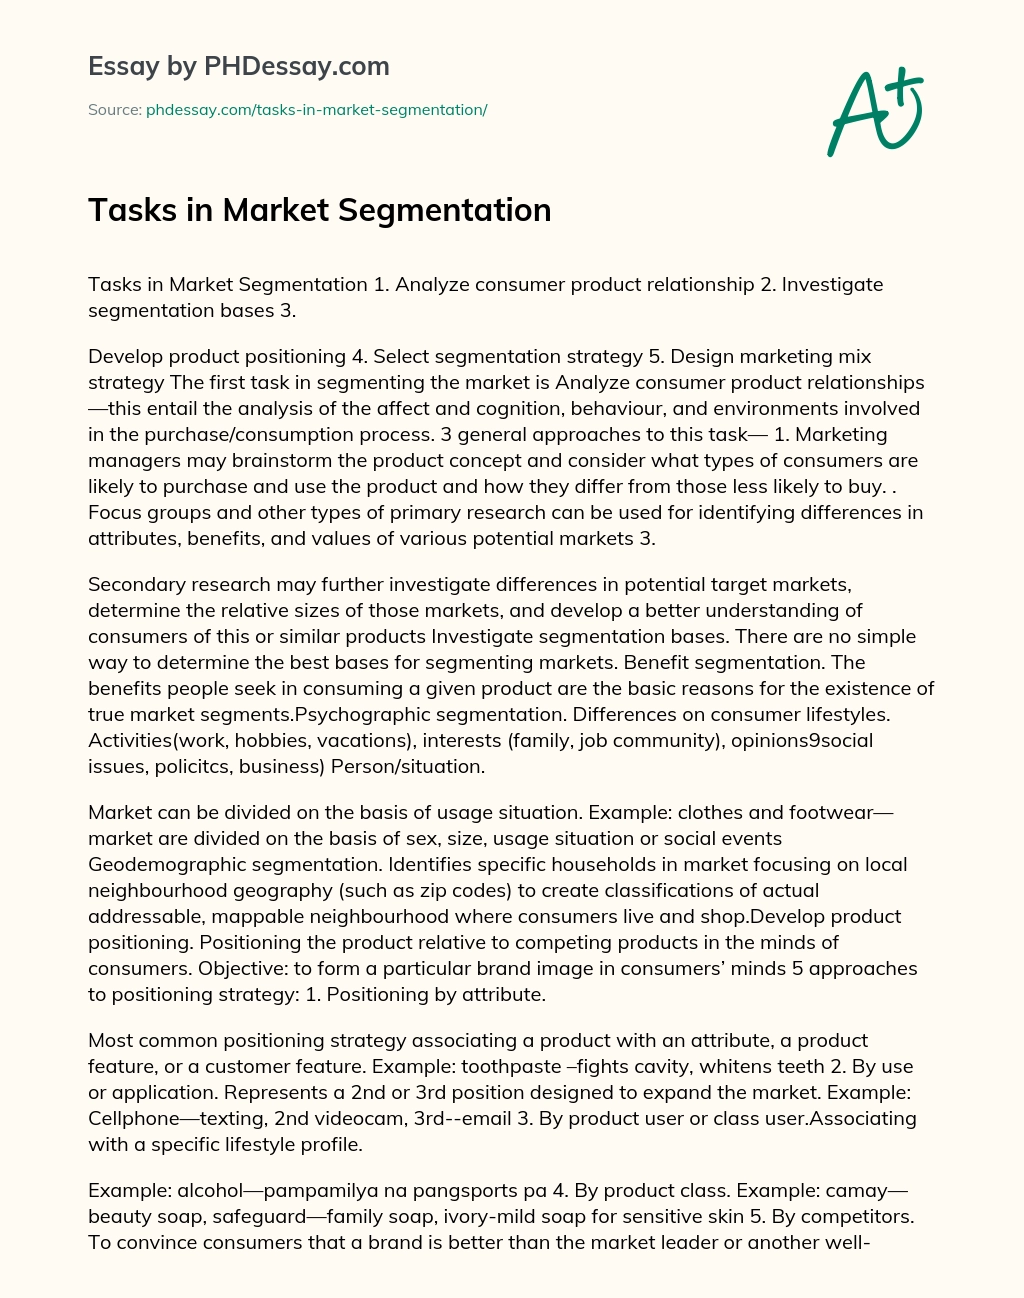 Tasks in Market Segmentation essay